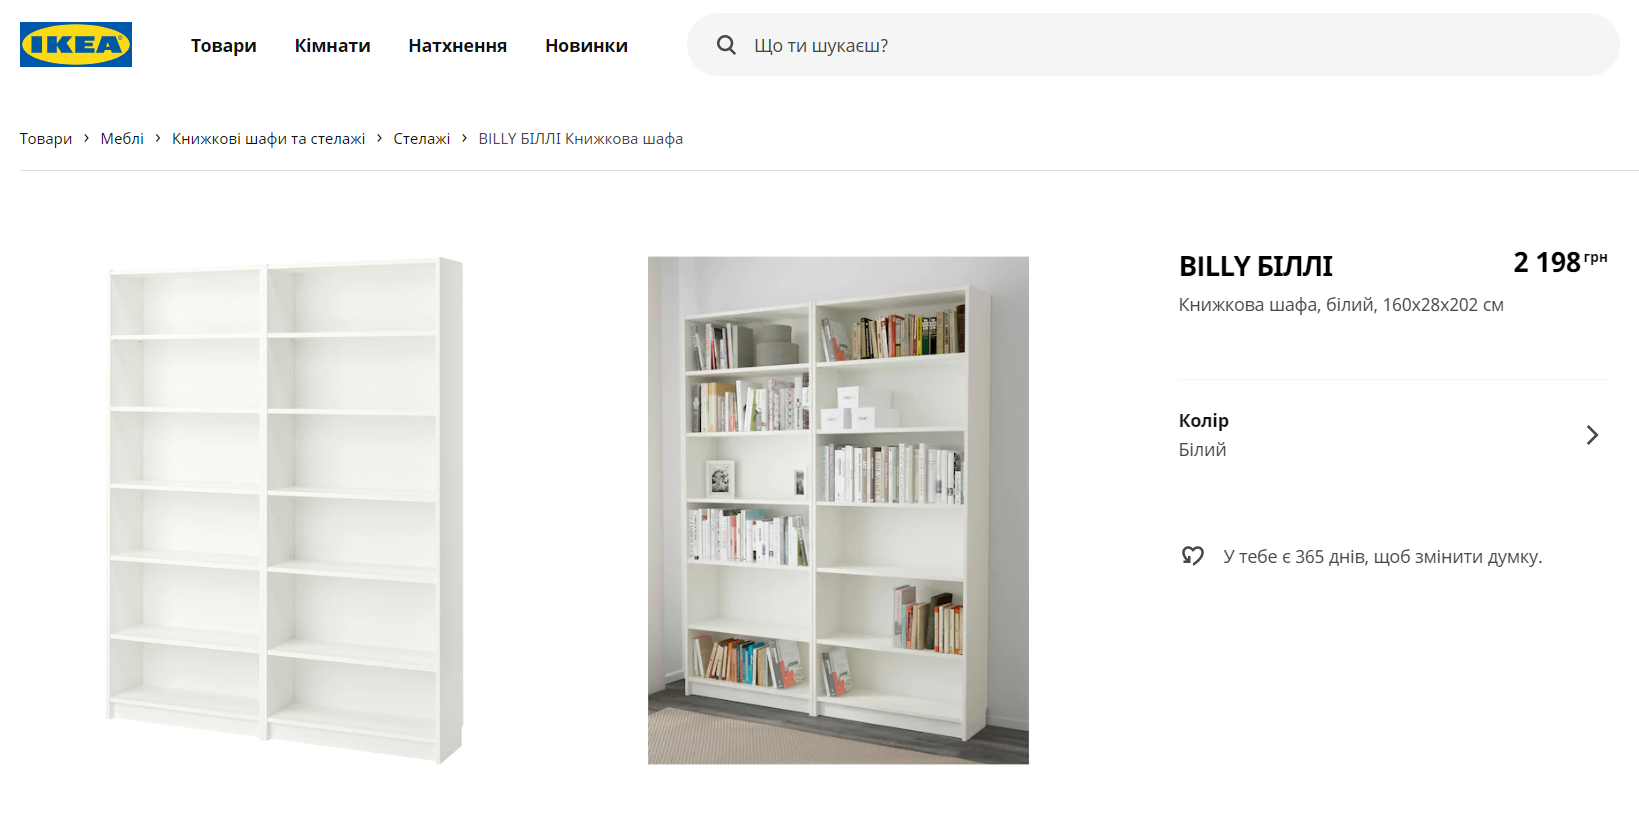 IKEA запустила в Украине официальный сайт с ценами